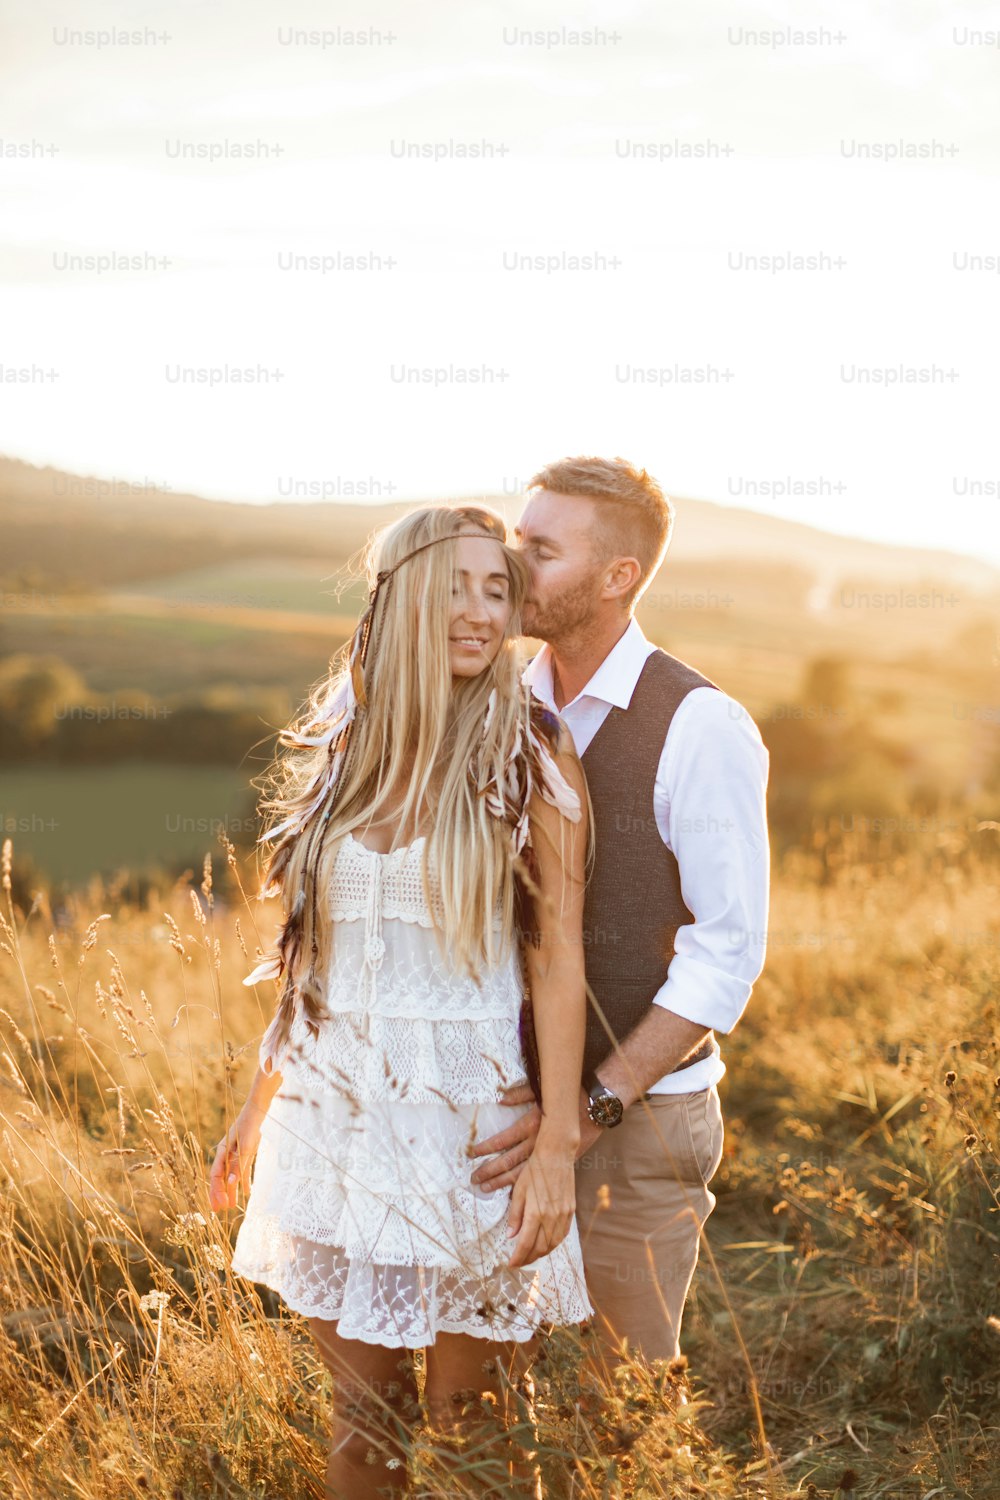 Pareja boho tomada de la mano y abrazándose juntos, caminando en el campo rural. Mujer bonita con vestido blanco y accesorios de plumas boho en el pelo, hombre guapo con traje casual.